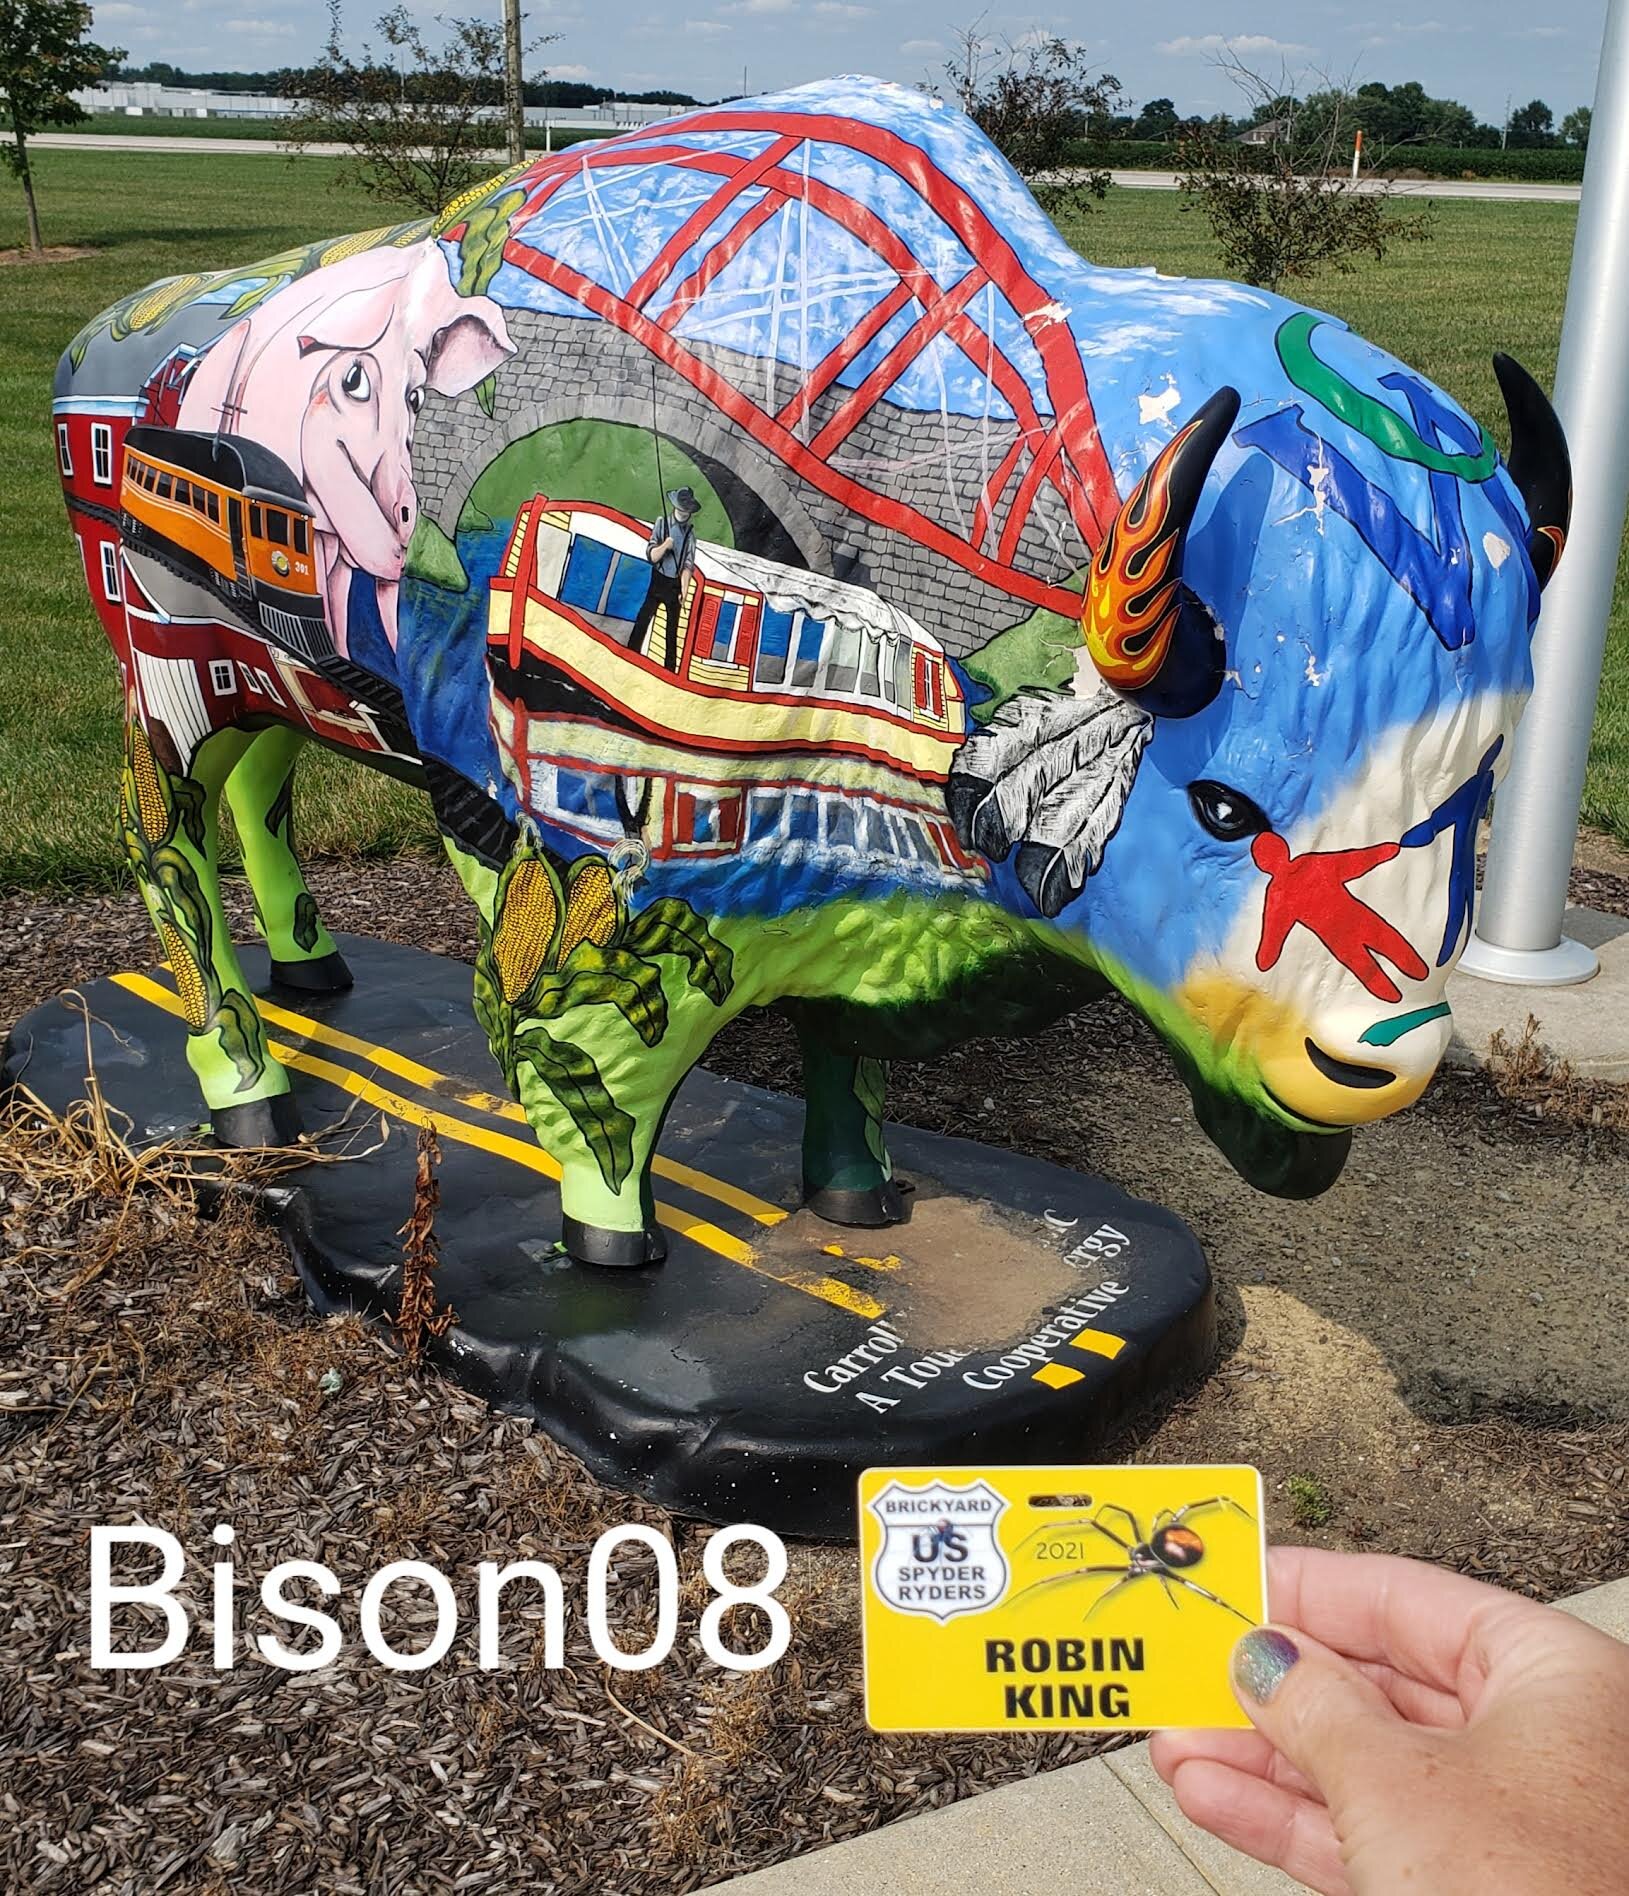 bison08.jpg